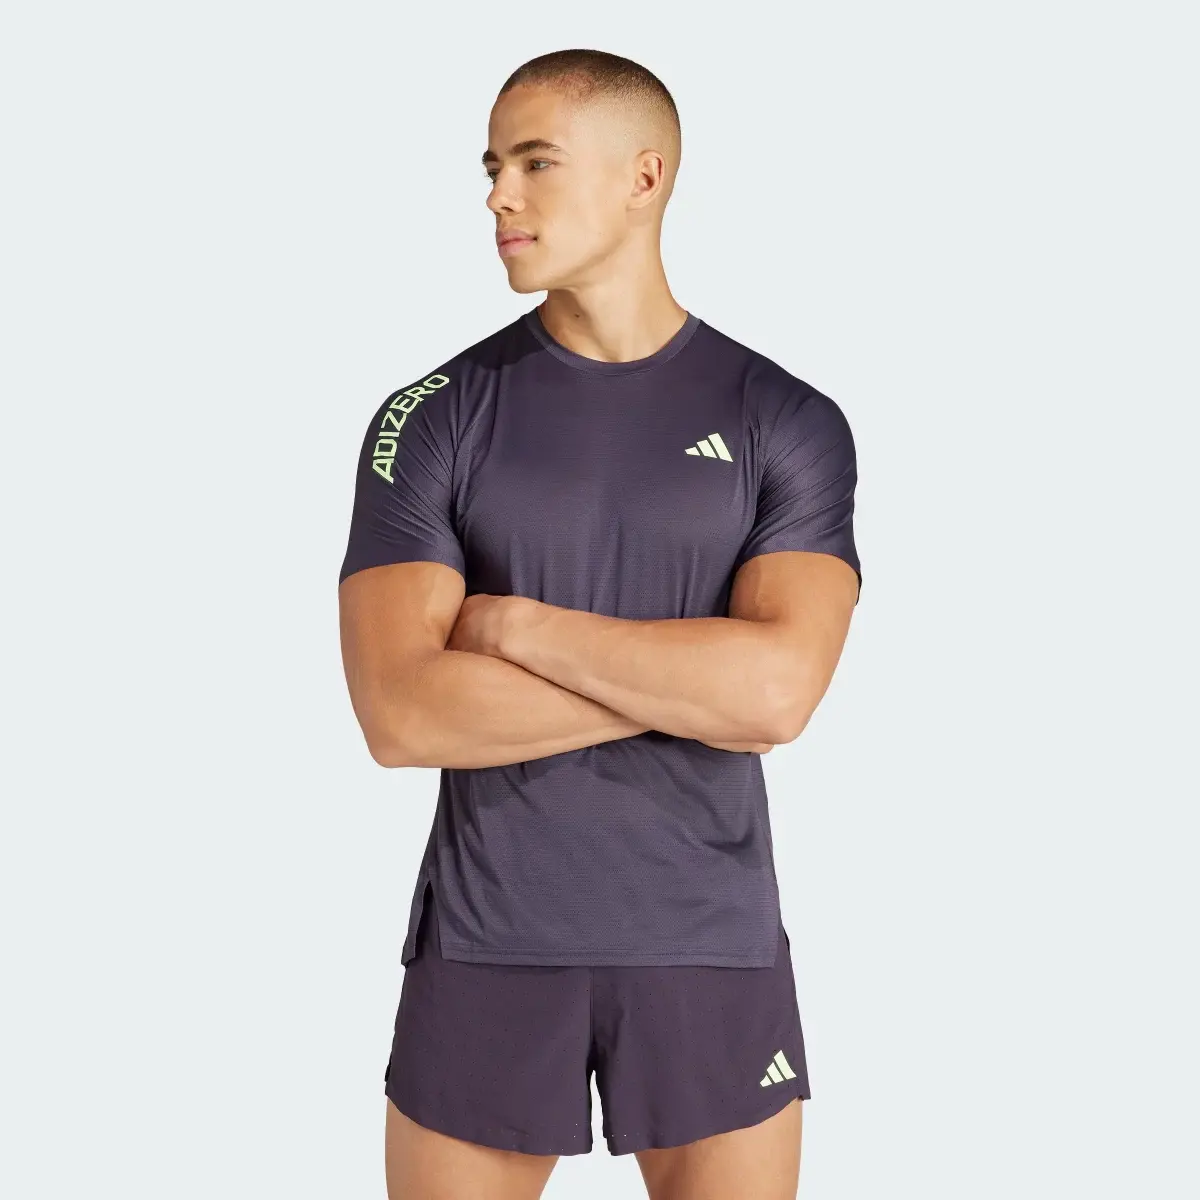 Adidas Adizero Running T-Shirt. 2